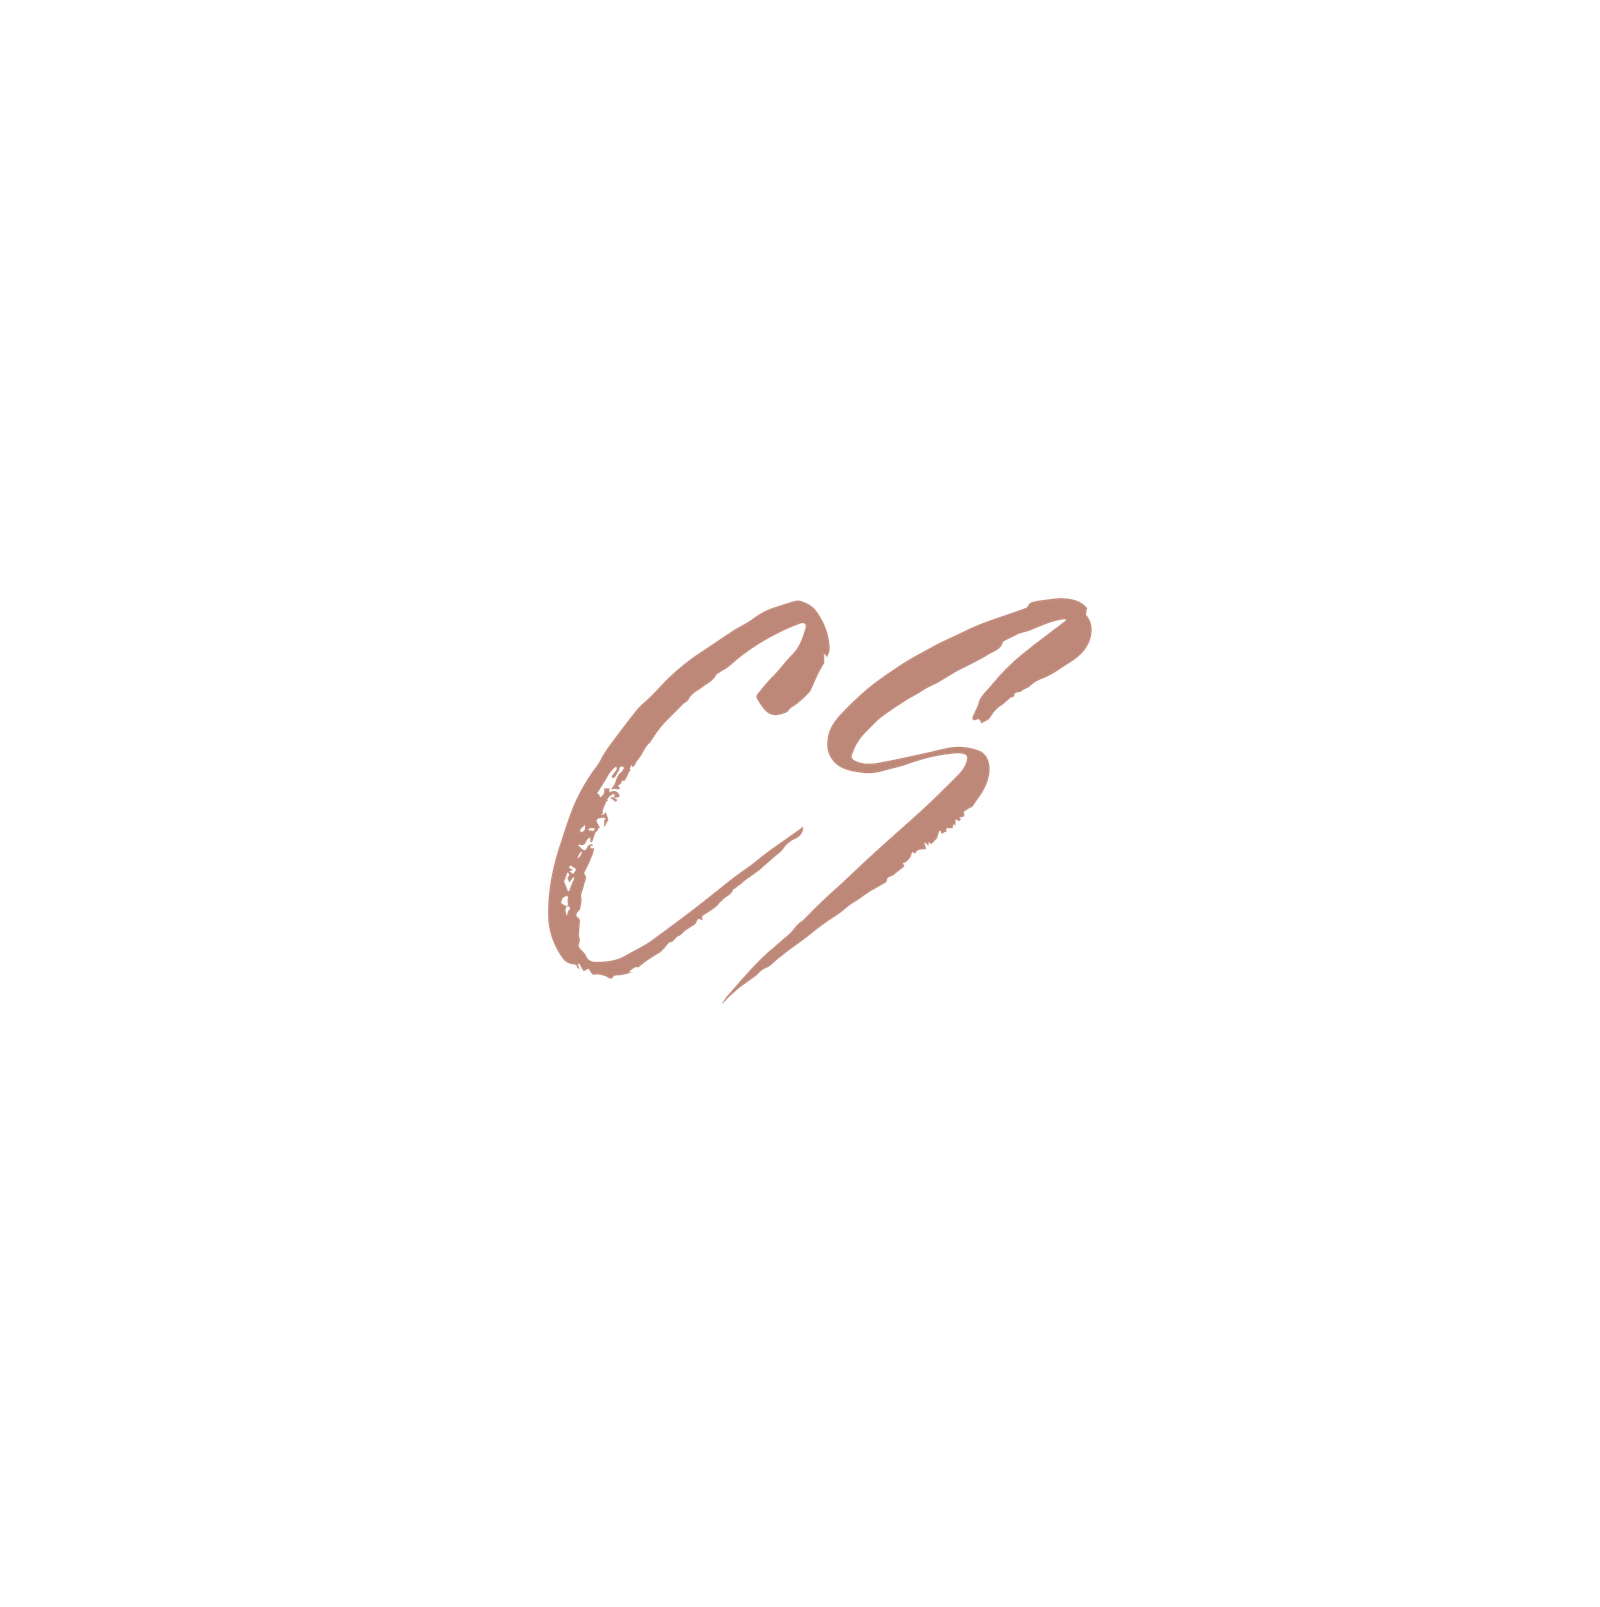 Carly Smith PMU Artistry